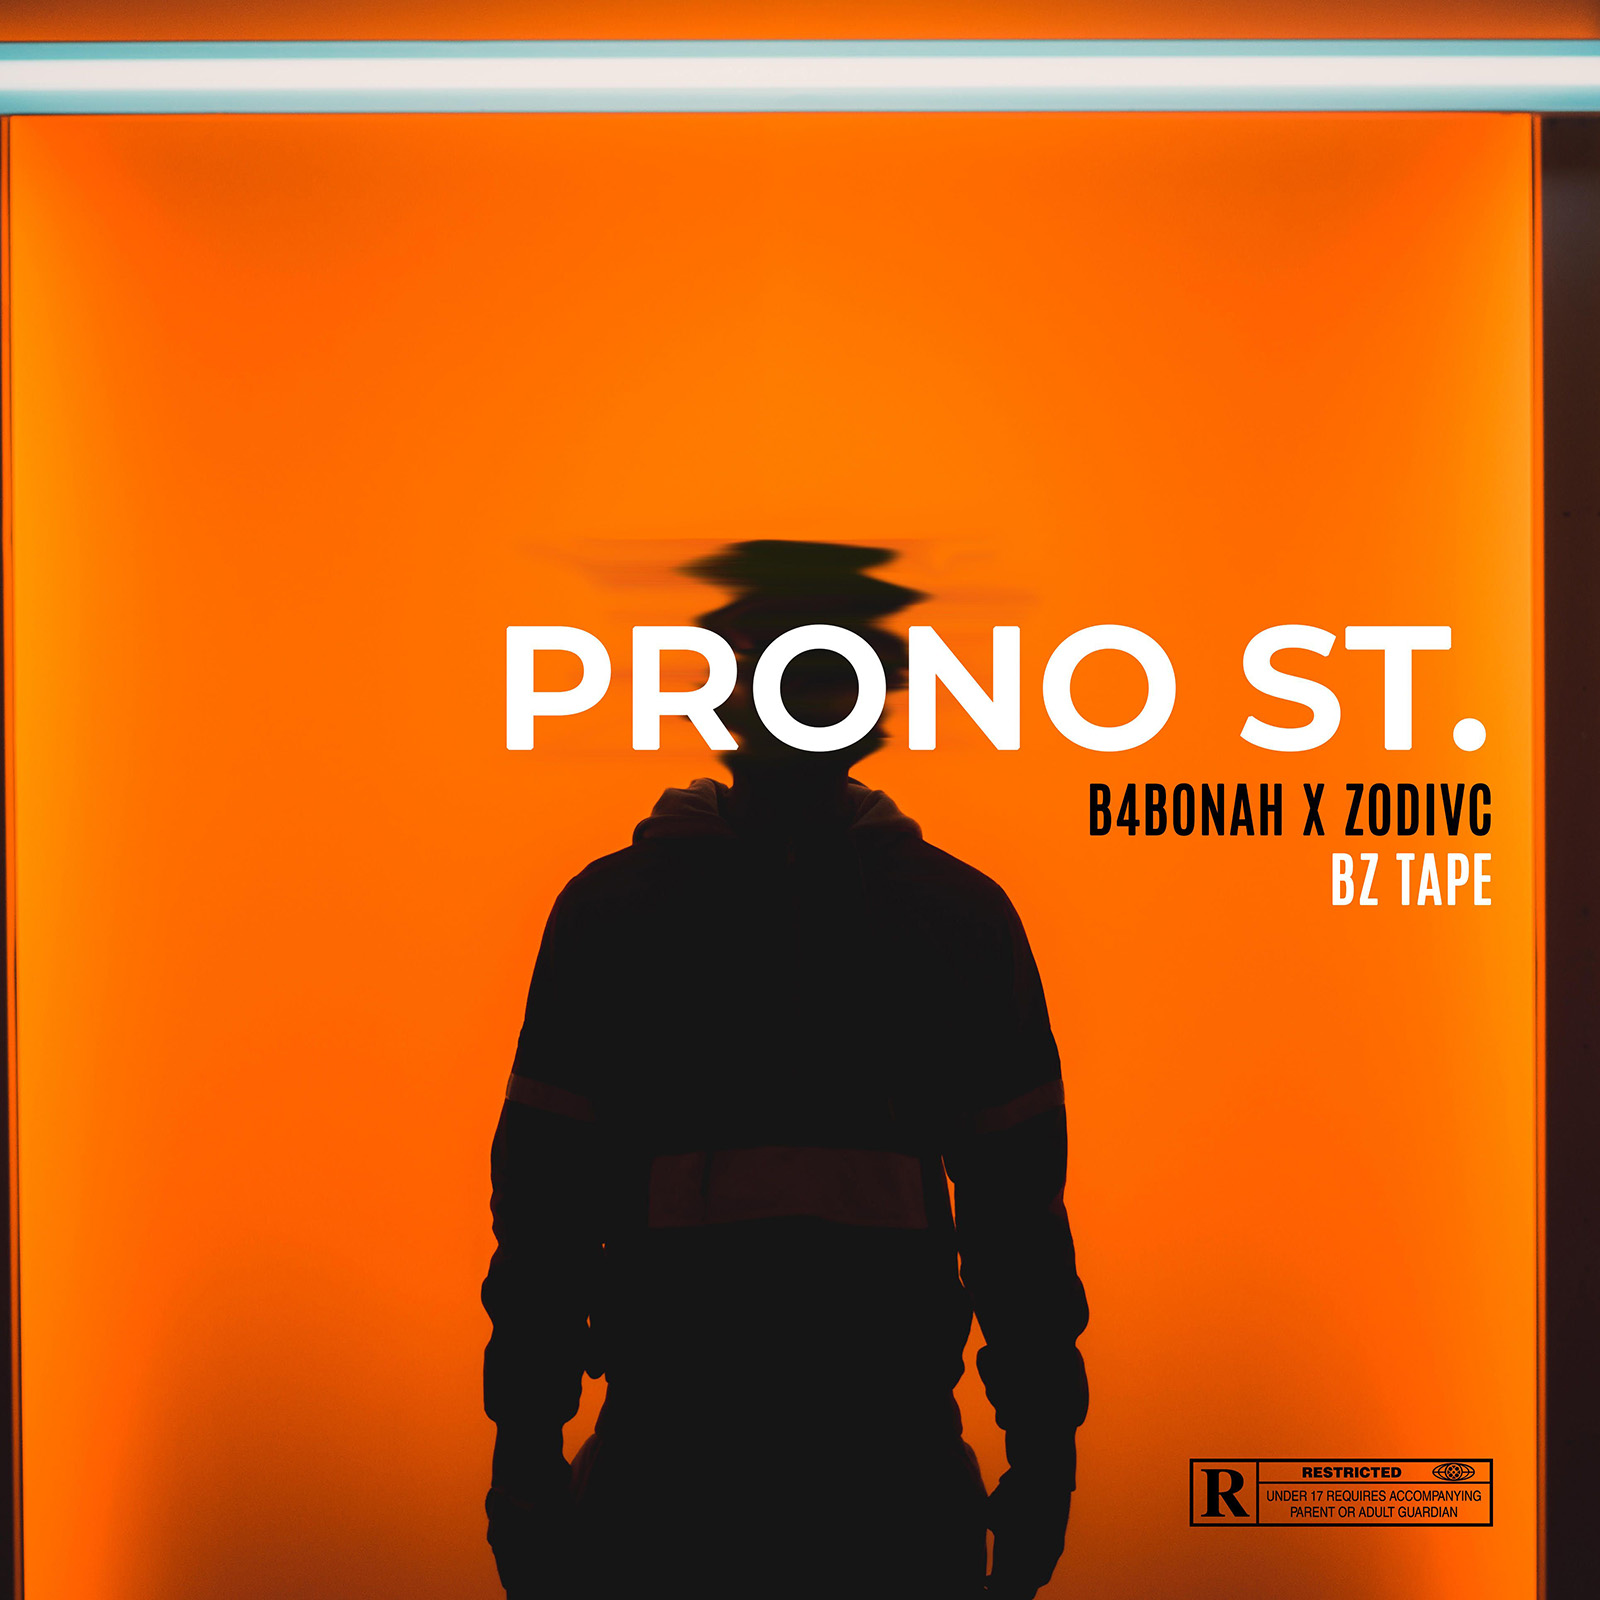 Prono St. EP by Zodivc & B4Bonah